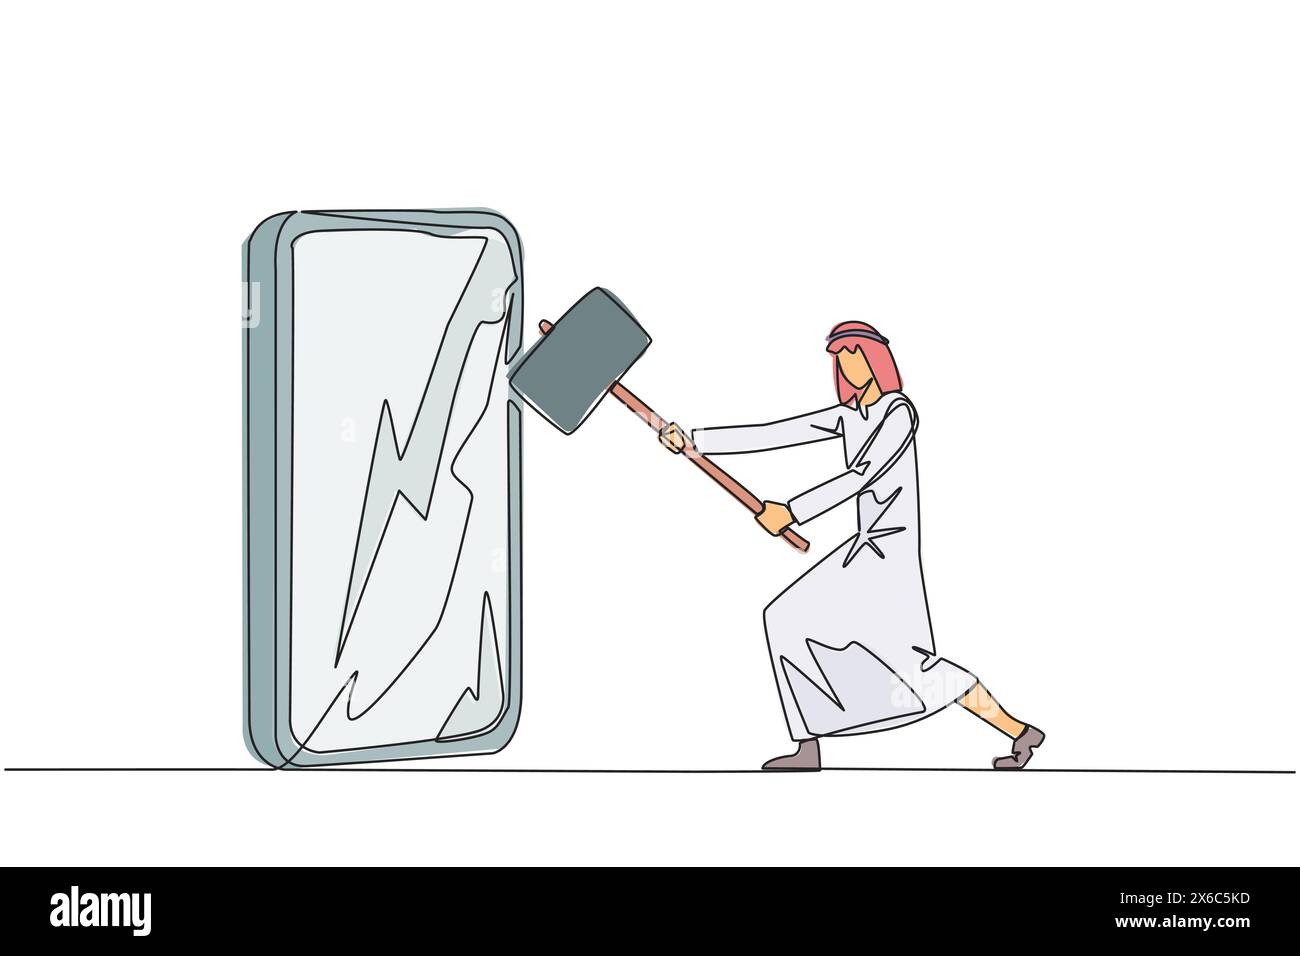 Continu une ligne dessinant homme d'affaires arabe se préparant à frapper grand smartphone. La technologie peut être destructrice si elle n'est pas utilisée correctement. L'intelligence est requi Illustration de Vecteur